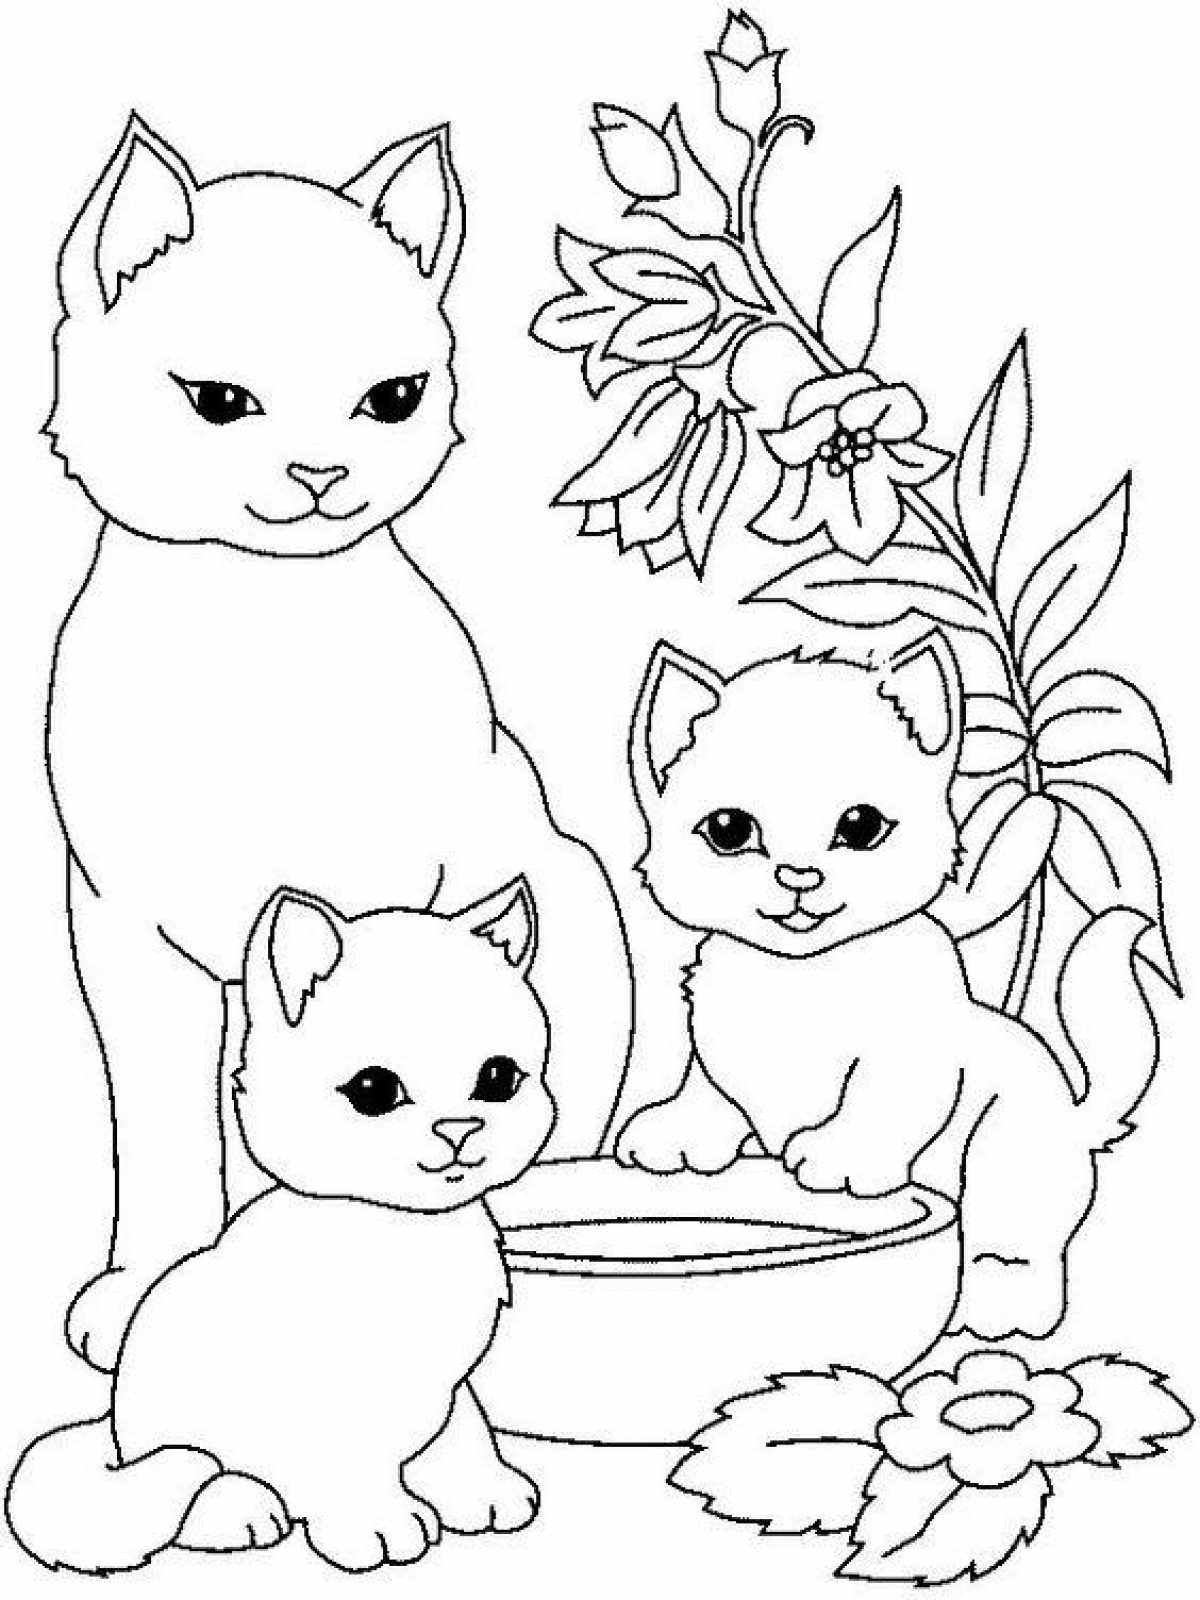 Раскраски Котов, Кошек и Котят распечатать на А4